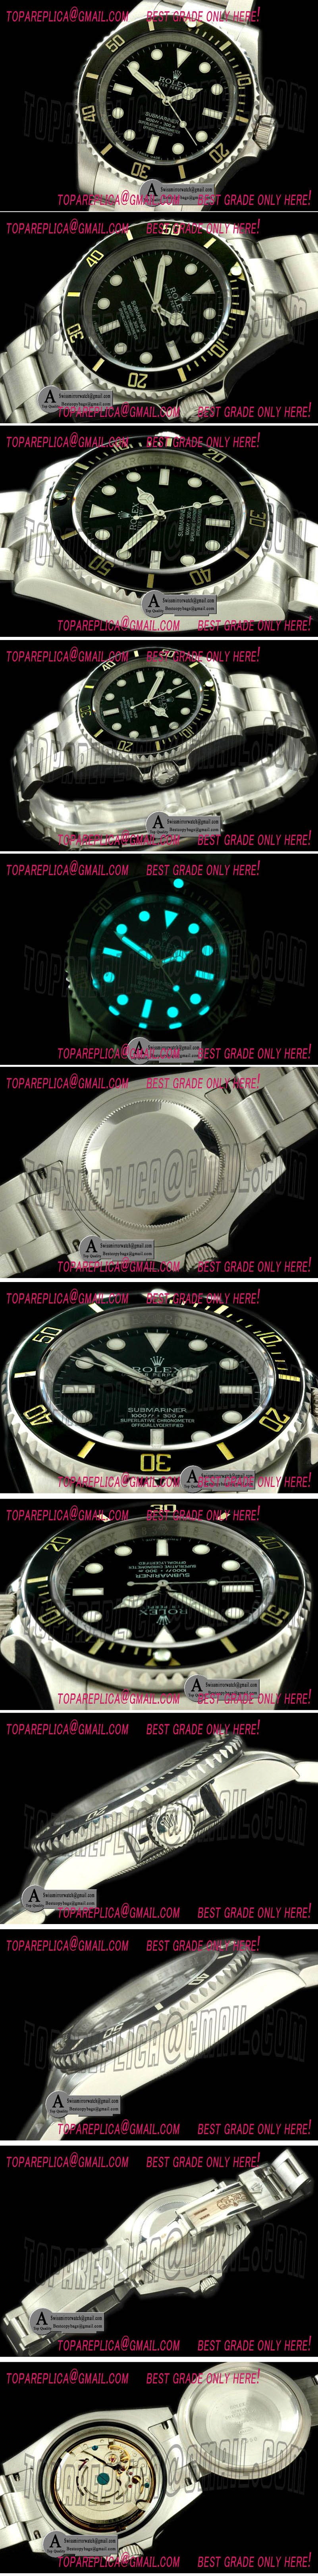 Rolex Submariner 114060 2012 NoDate Replica Watches